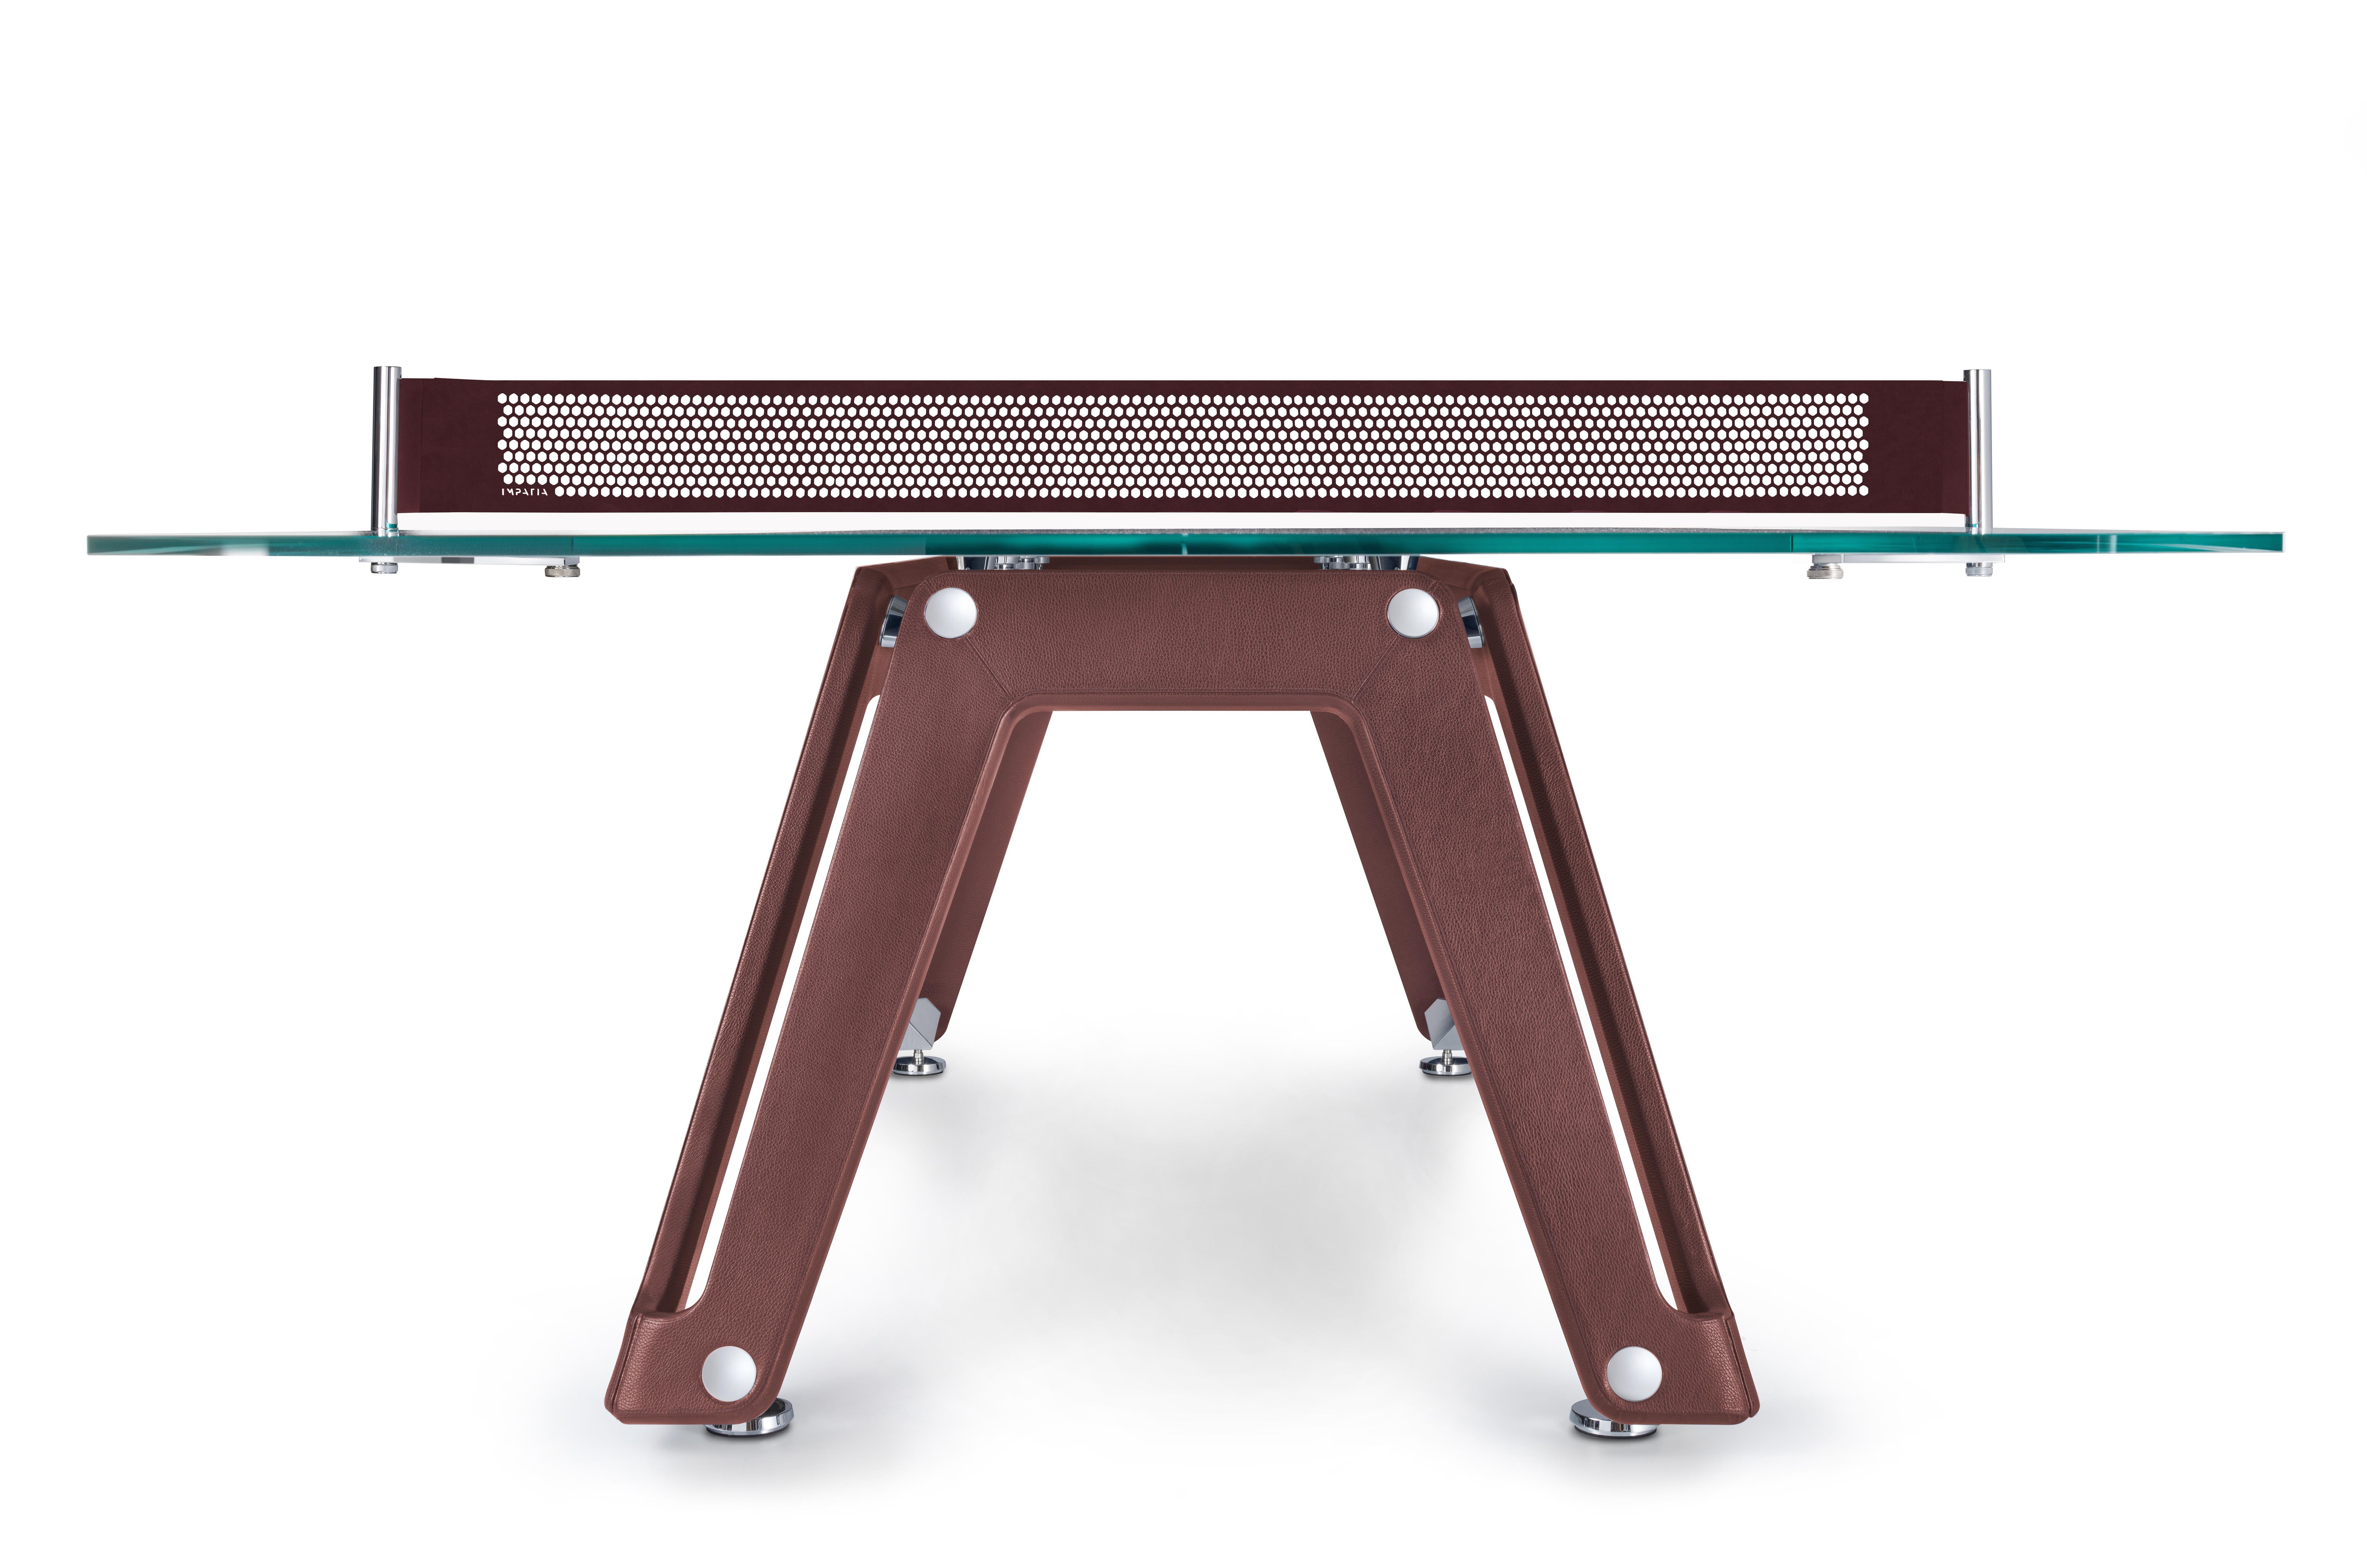 La table de ping-pong en cuir Lungolinea est une vision, une volonté de réinterpréter les classiques avec ambition. Il démontre la sophistication et l'ingéniosité du design et de l'artisanat italiens dans le domaine du tennis de table. 

Cette